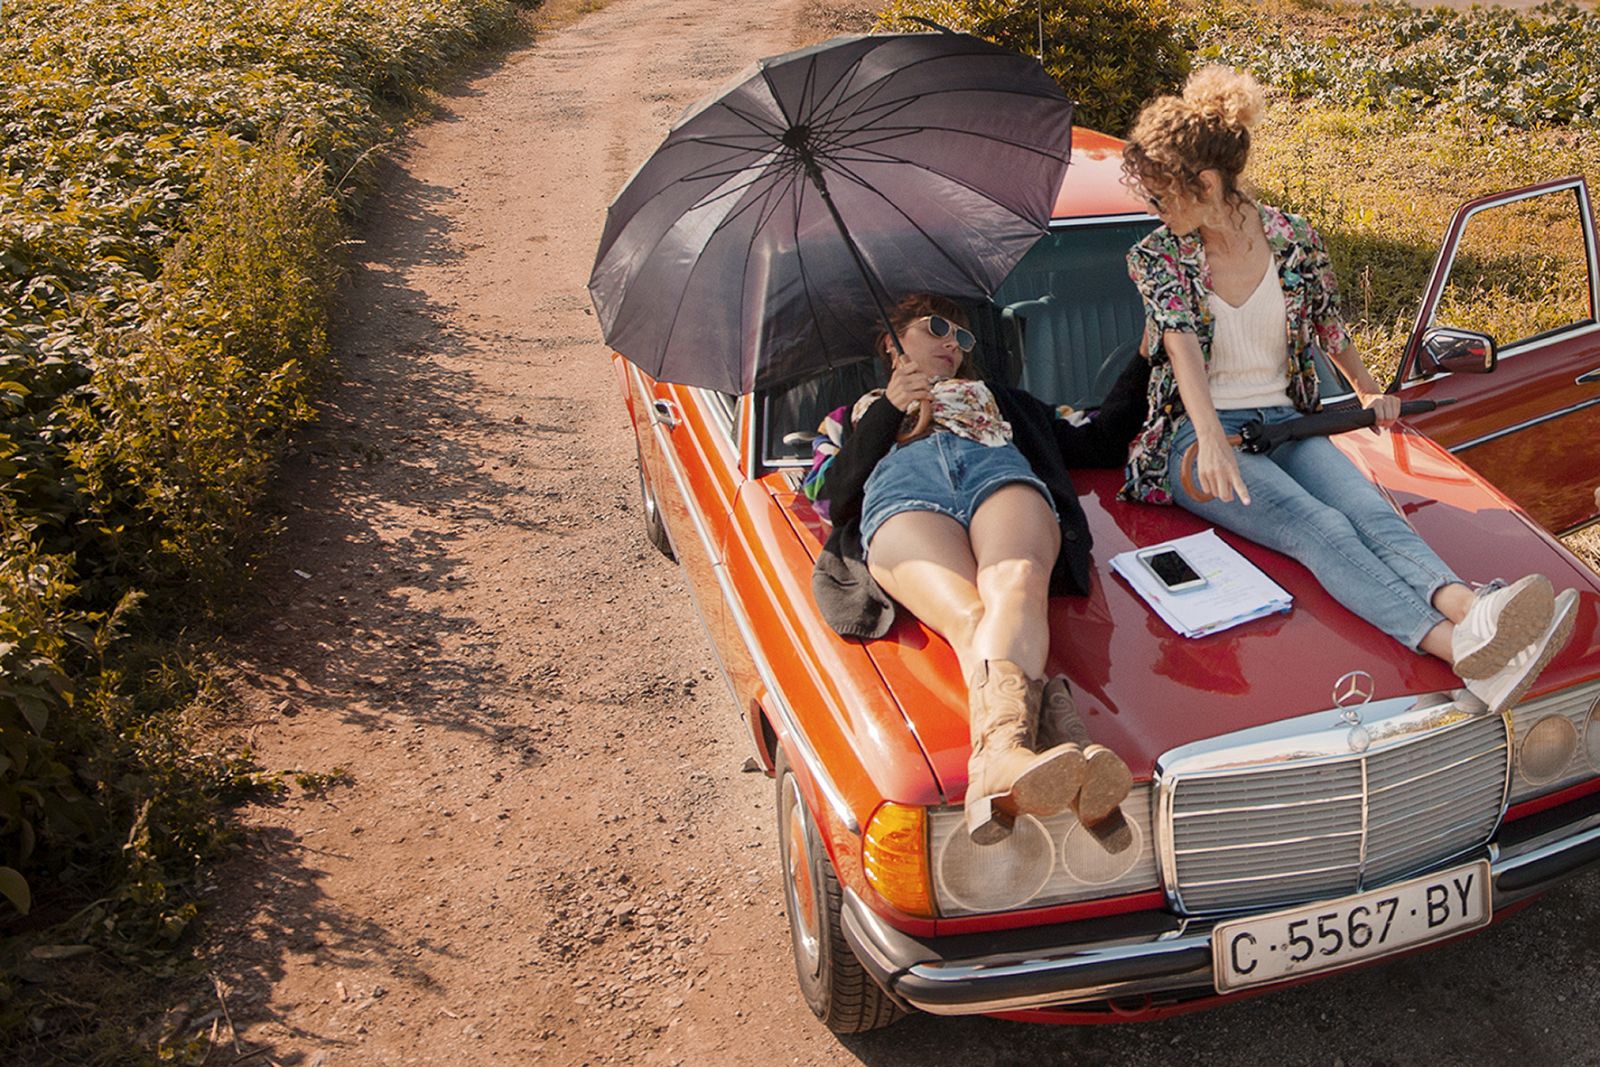 'Antes de perder' cuenta la historia de dos chicas que se lanzan a la carretera en una huida sin retorno